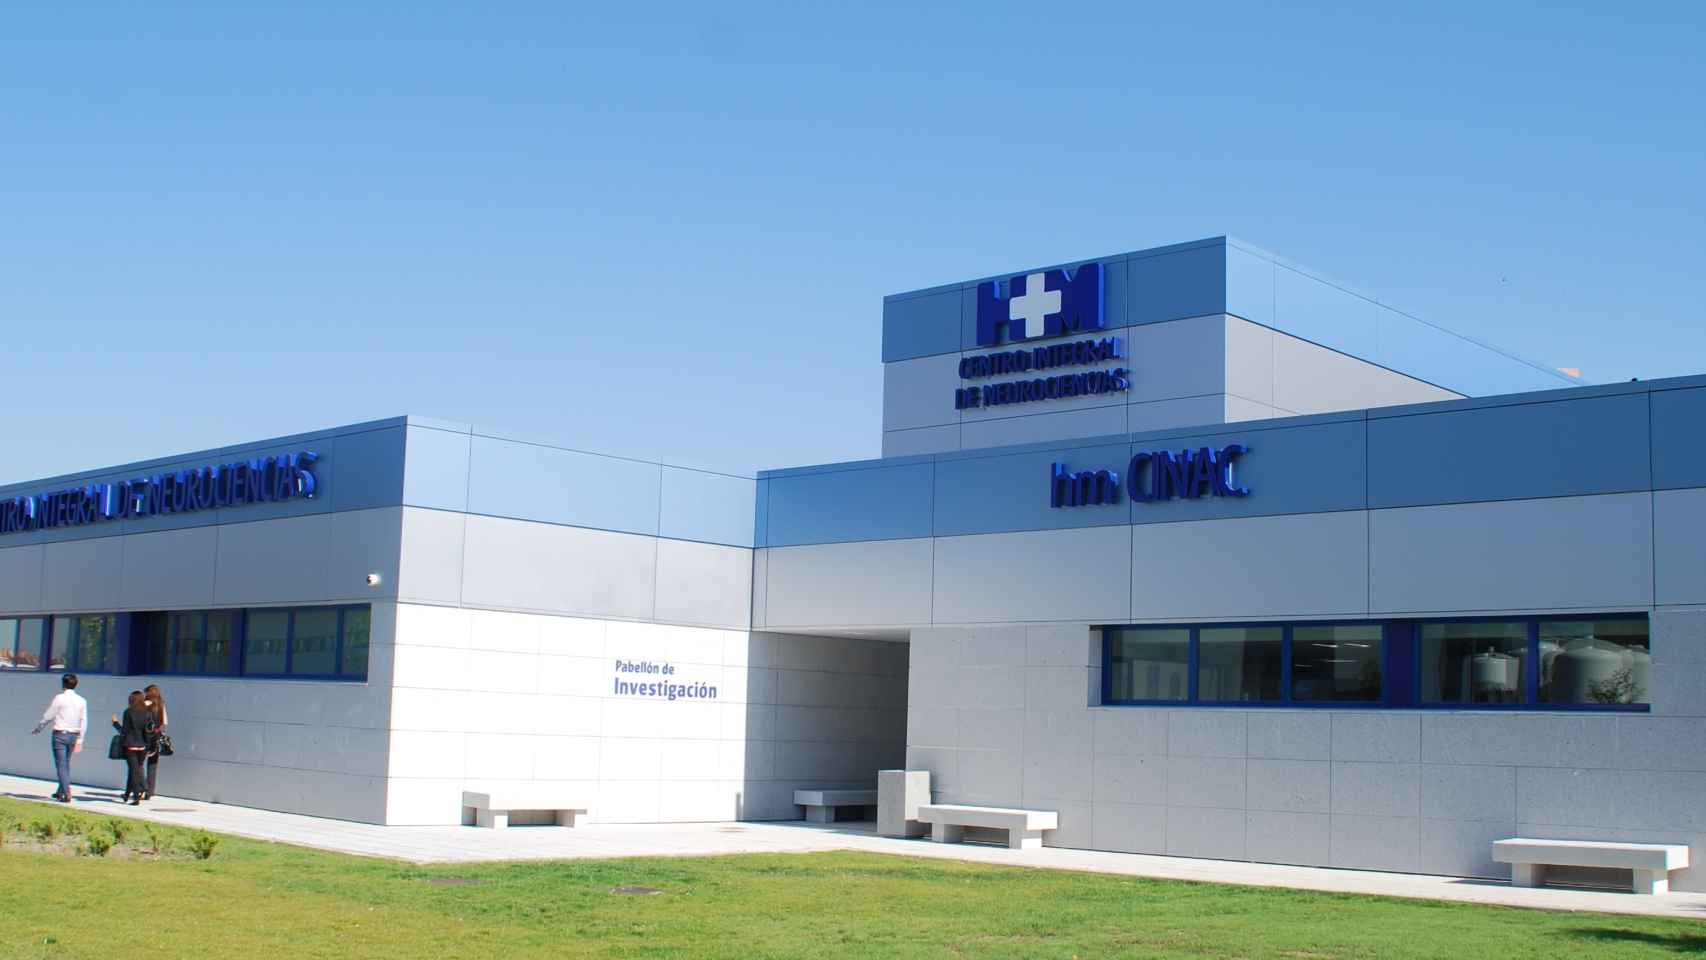 Imagen del centro de investigación HM CINAC situado en el Hospital Universitario HM Puerta del Sur.